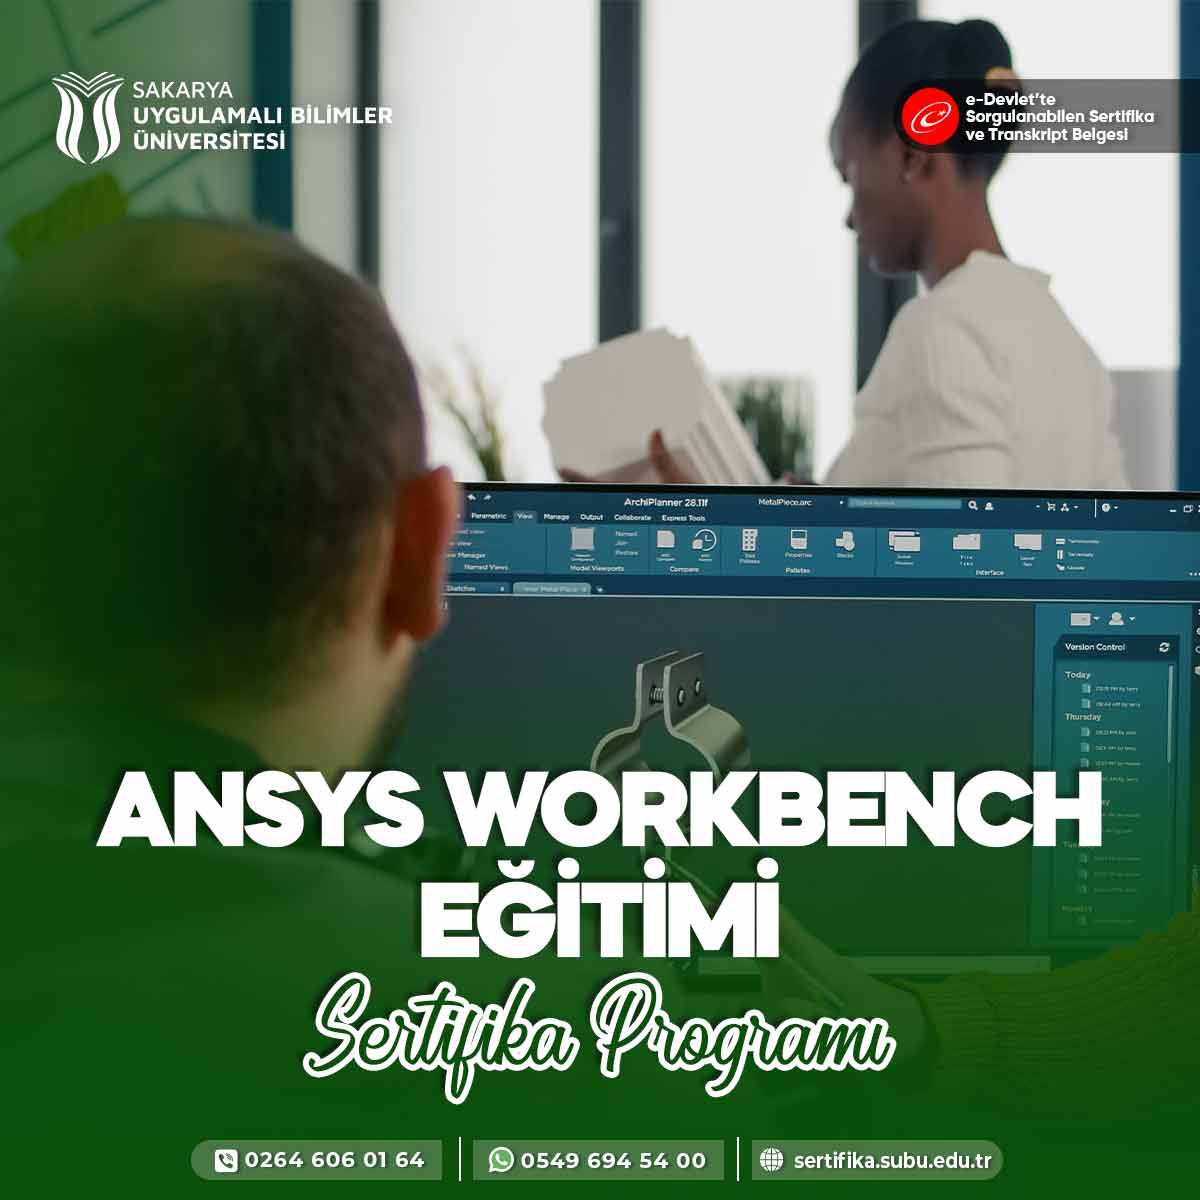 Ansys Workbench Eğitimi Sertifika Programı